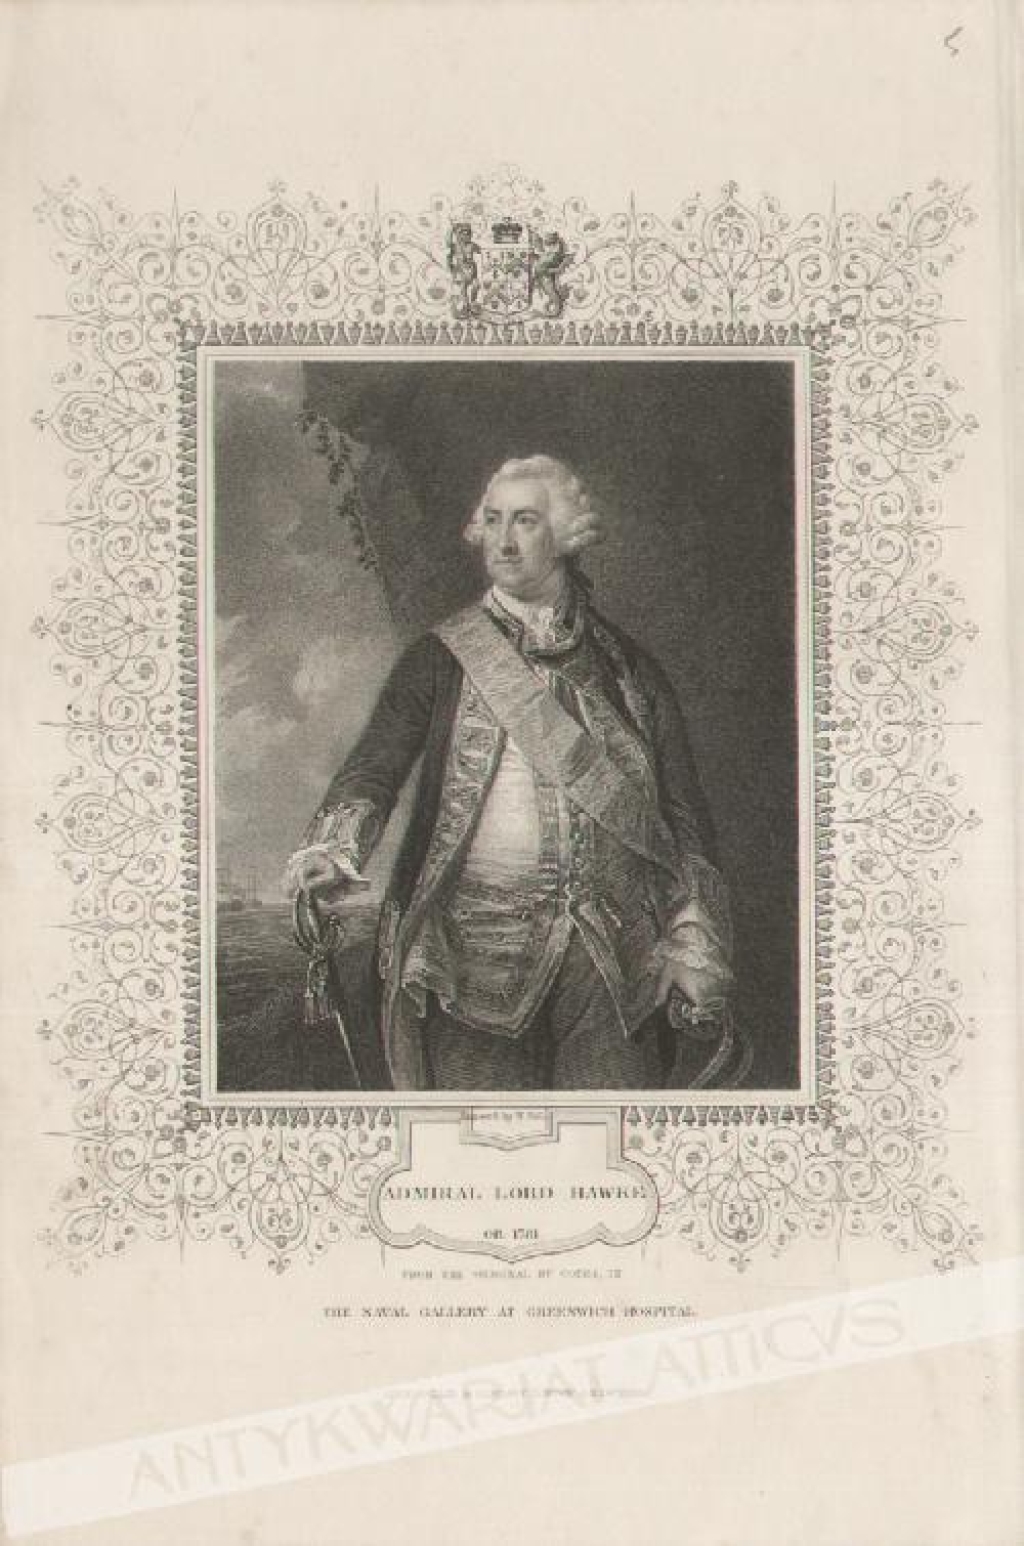 [rycina, ok. 1850] Admiral Lord Hawke